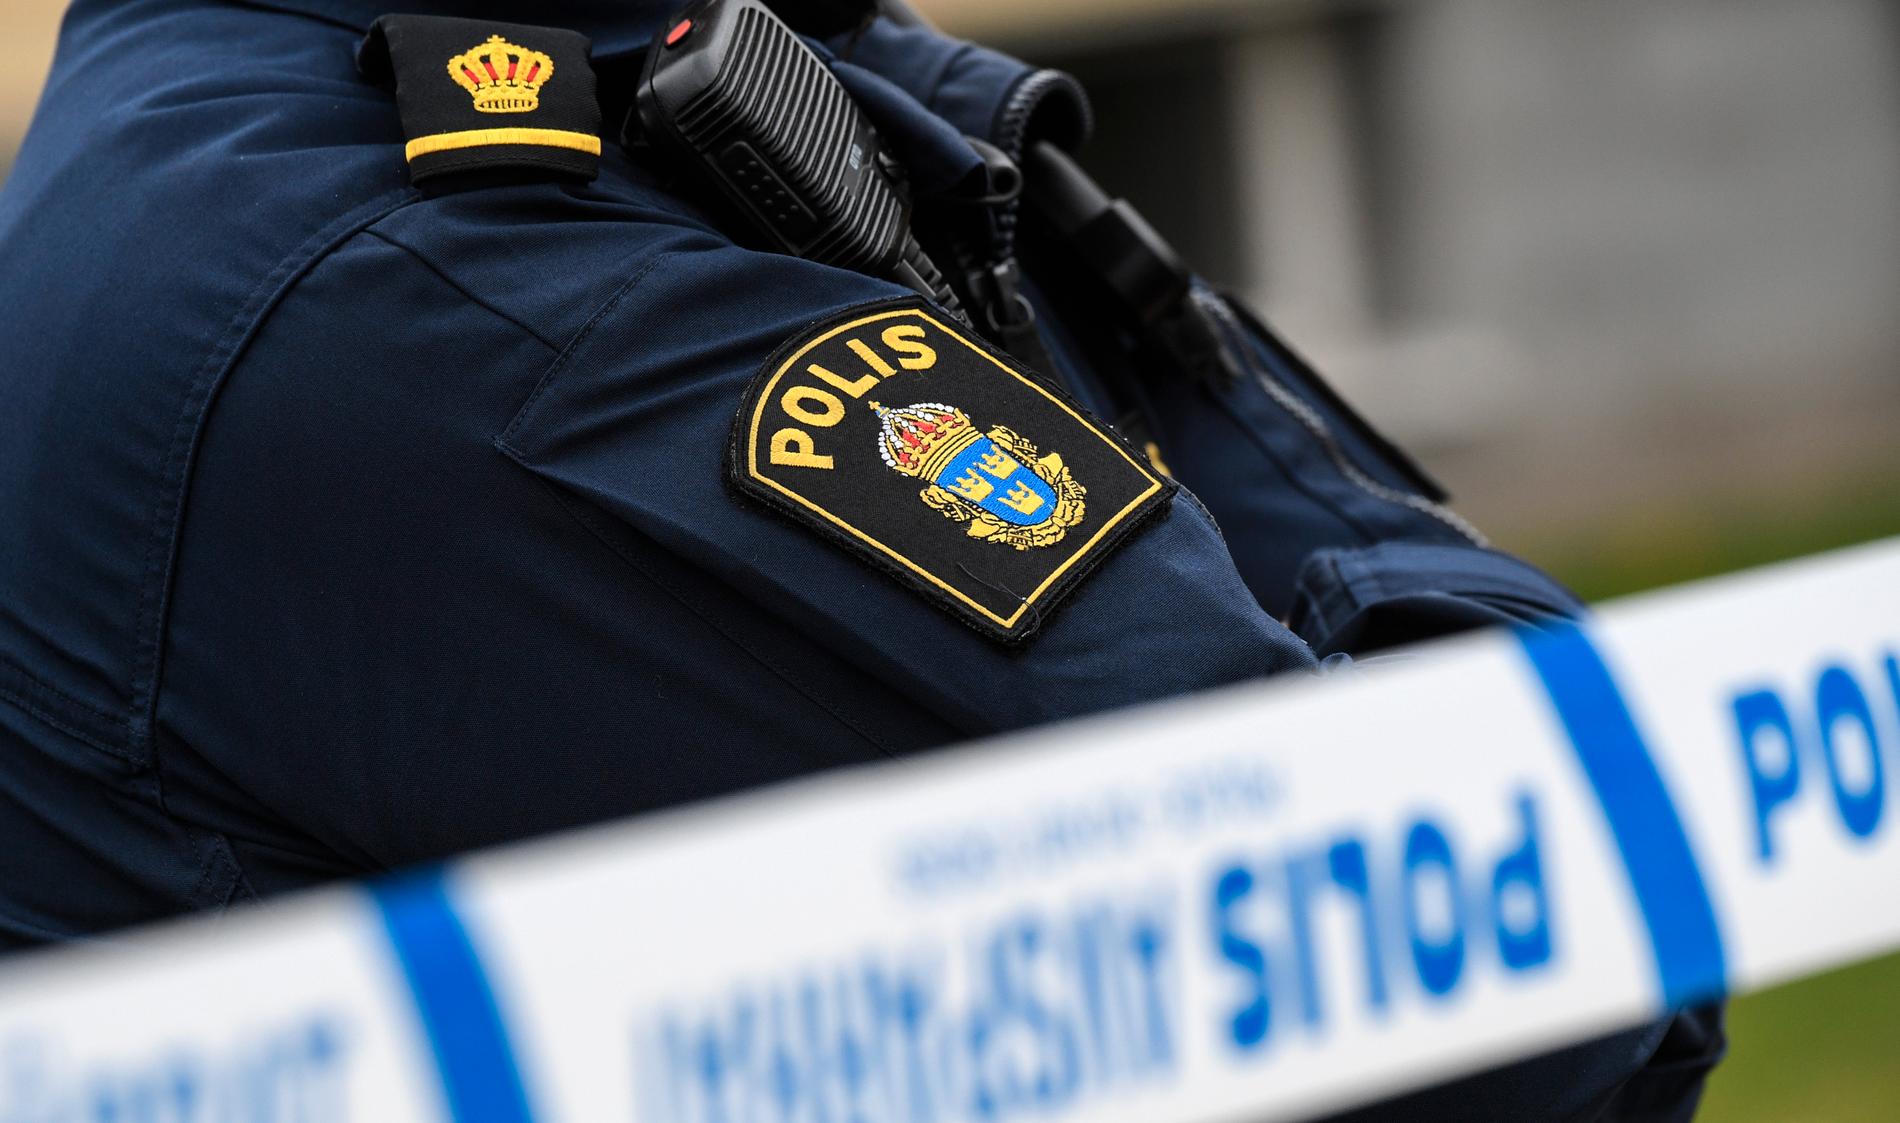 Polisen har inlett en förundersökning om misstänkt mord efter att en död person påträffats i en lägenhet i Skelleftehamn. Två män har anhållits. Arkivbild.